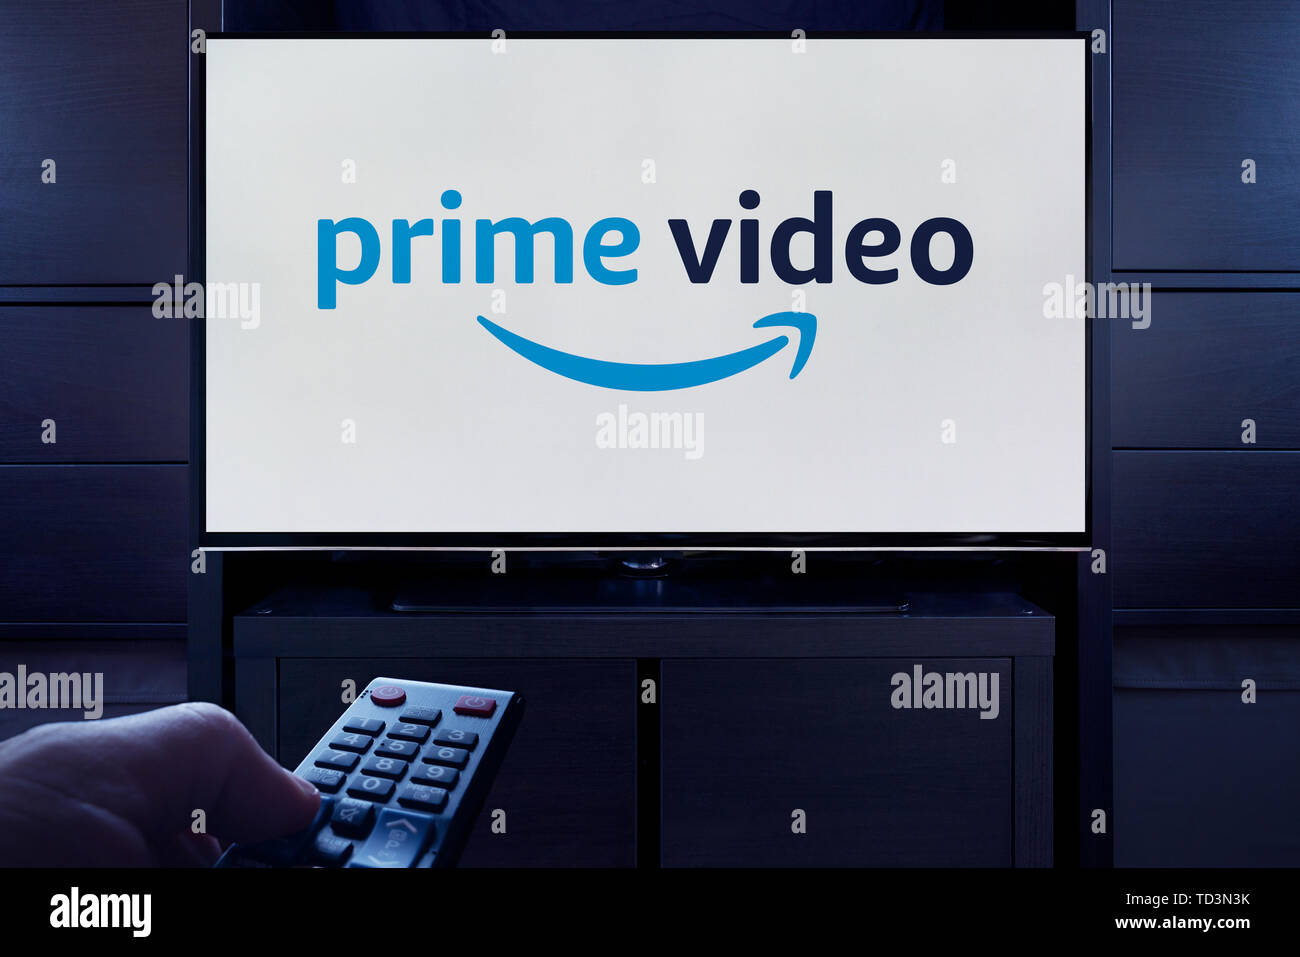 Ein Mann Punkte eine TV-Fernbedienung auf den Fernseher, die zeigt das Logo für die Prime Video on Demand Video Streaming Service (nur redaktionelle Nutzung). Stockfoto